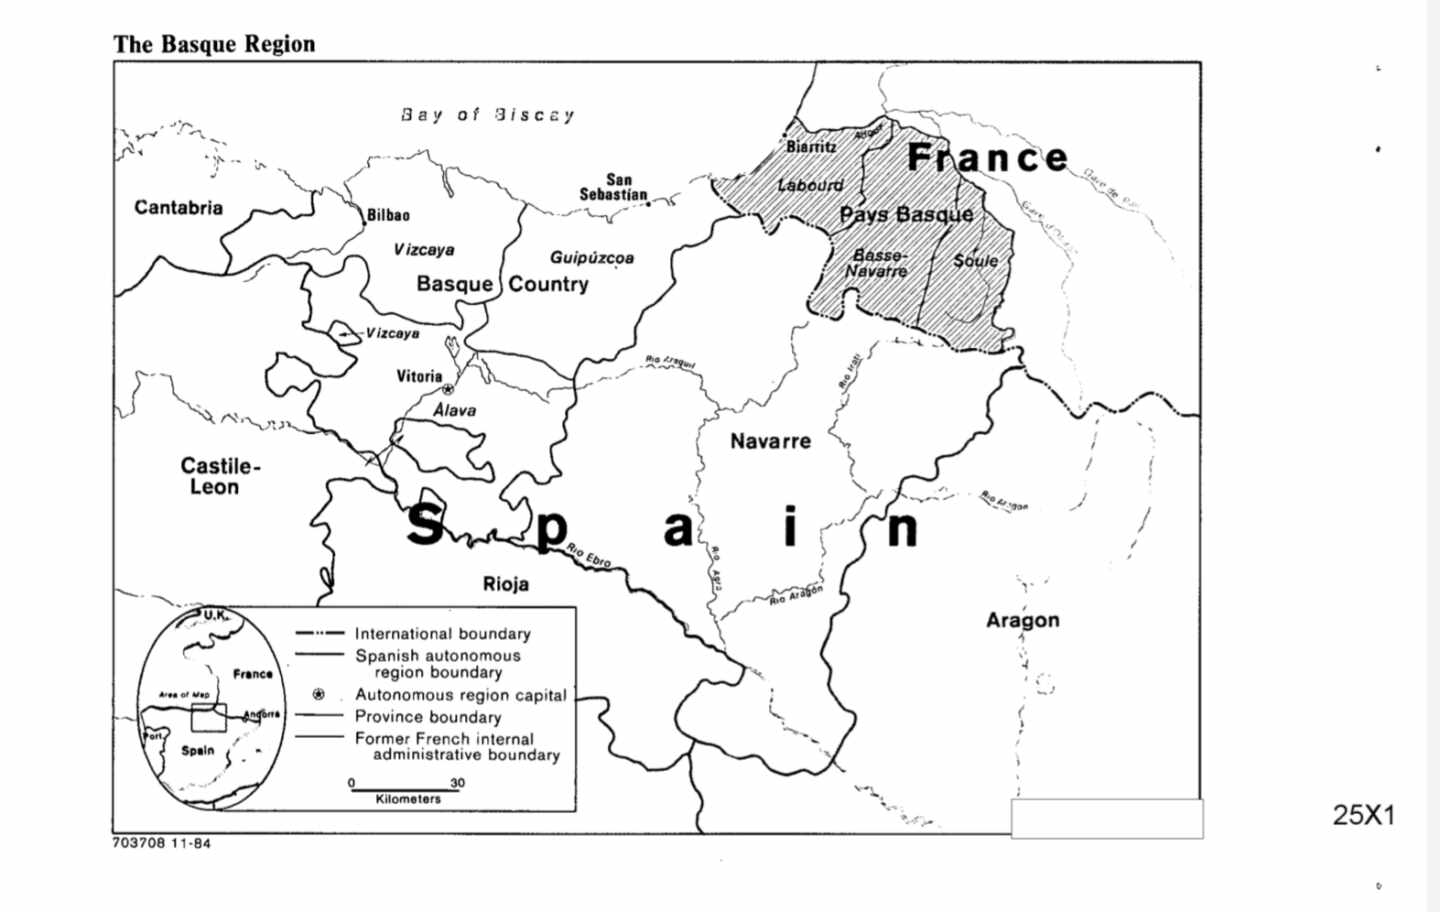 Mapa de Euskadi, Navarra y el País Vasco francés incluido en el informe de la CIA.